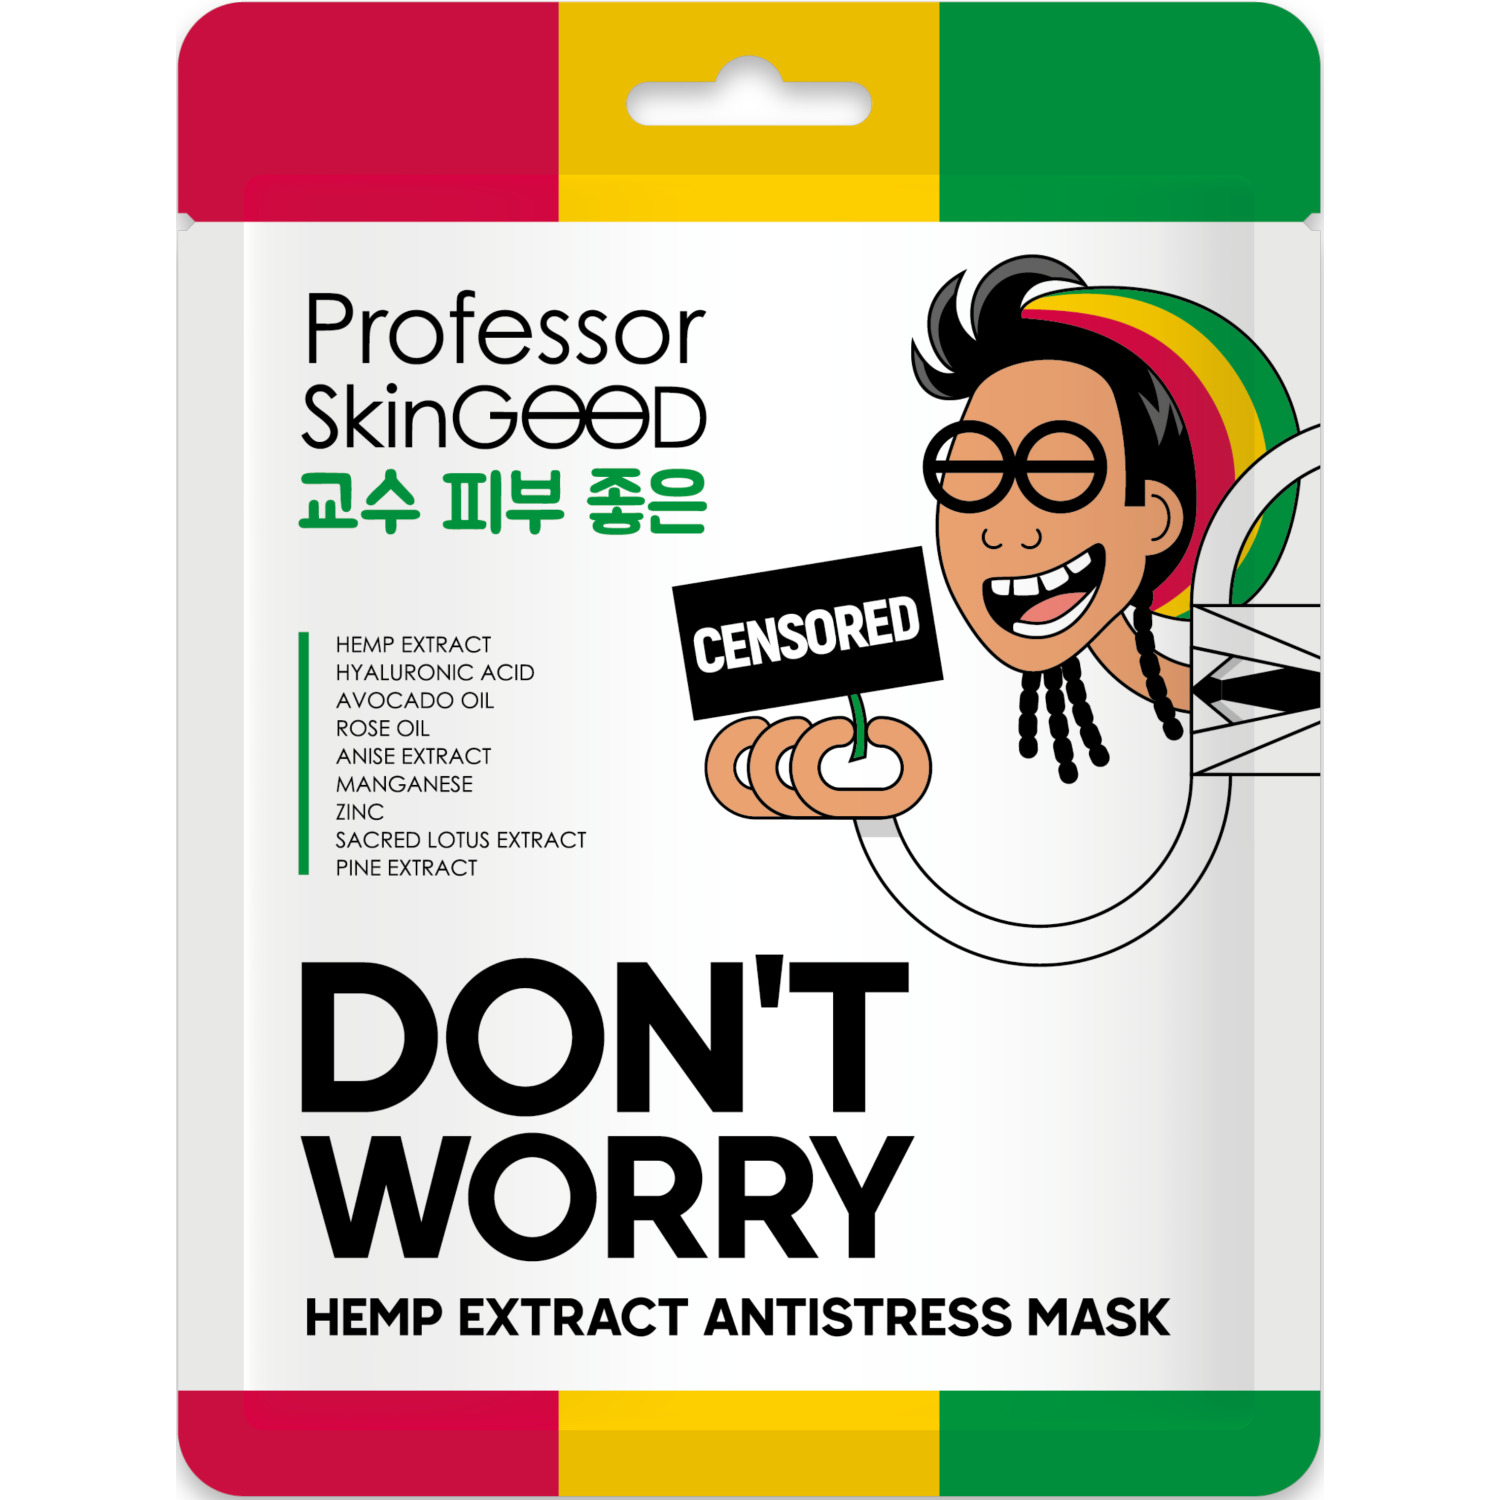 Маска для лица Professor SkinGOOD Hemp Extract Antistress Mask с экстрактом конопли, 25 мл талантливая мисс фаруэлл